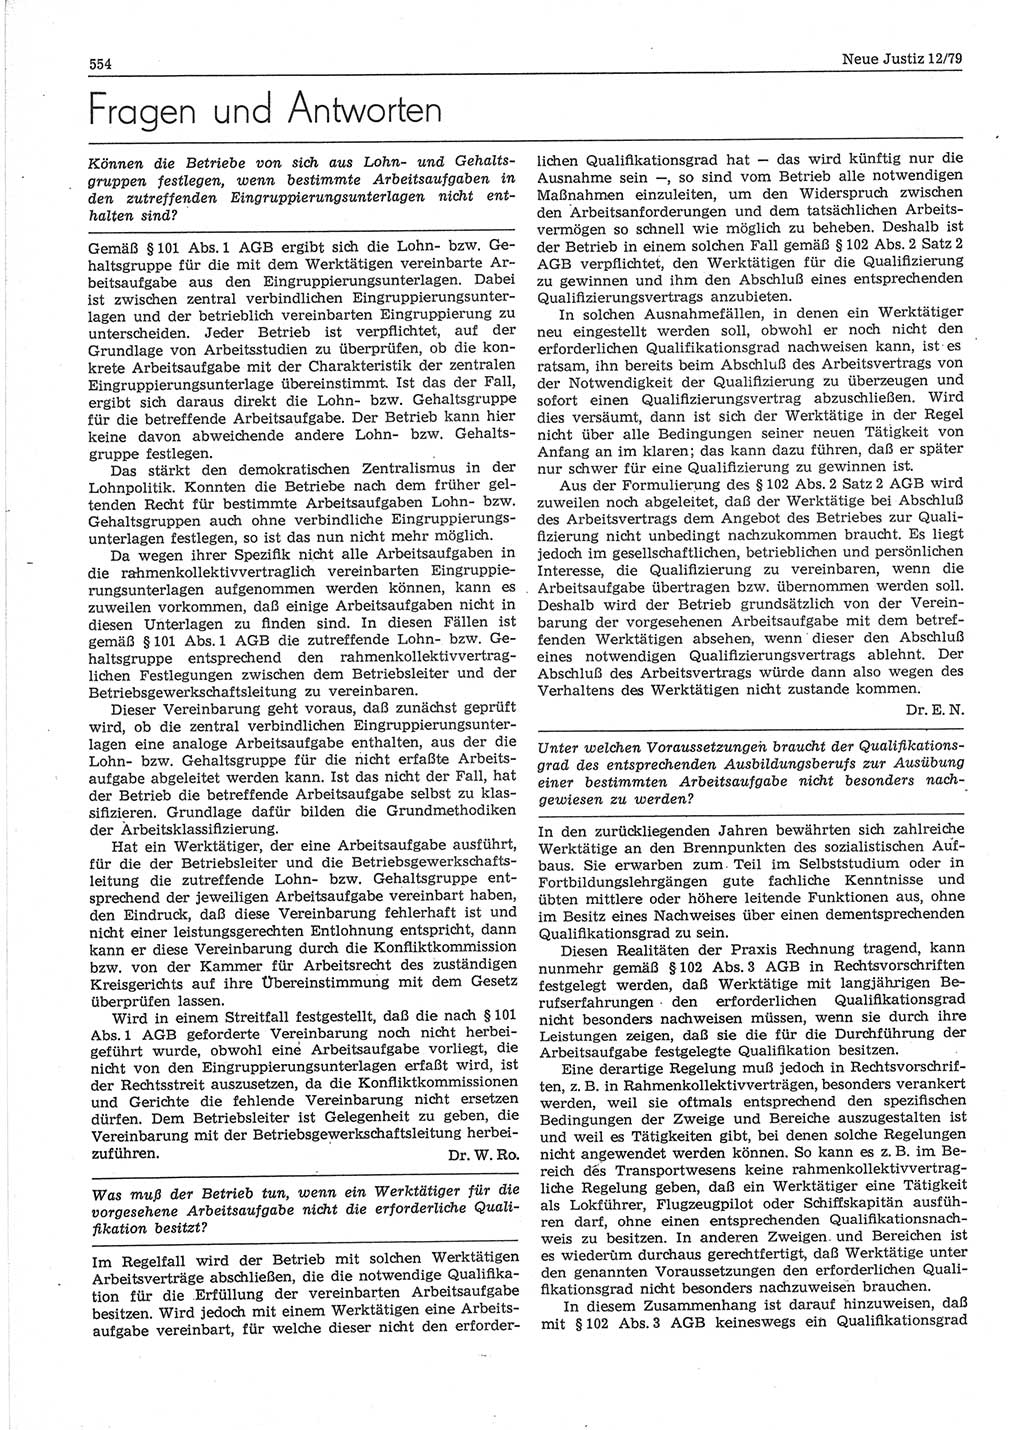 Neue Justiz (NJ), Zeitschrift für sozialistisches Recht und Gesetzlichkeit [Deutsche Demokratische Republik (DDR)], 33. Jahrgang 1979, Seite 554 (NJ DDR 1979, S. 554)